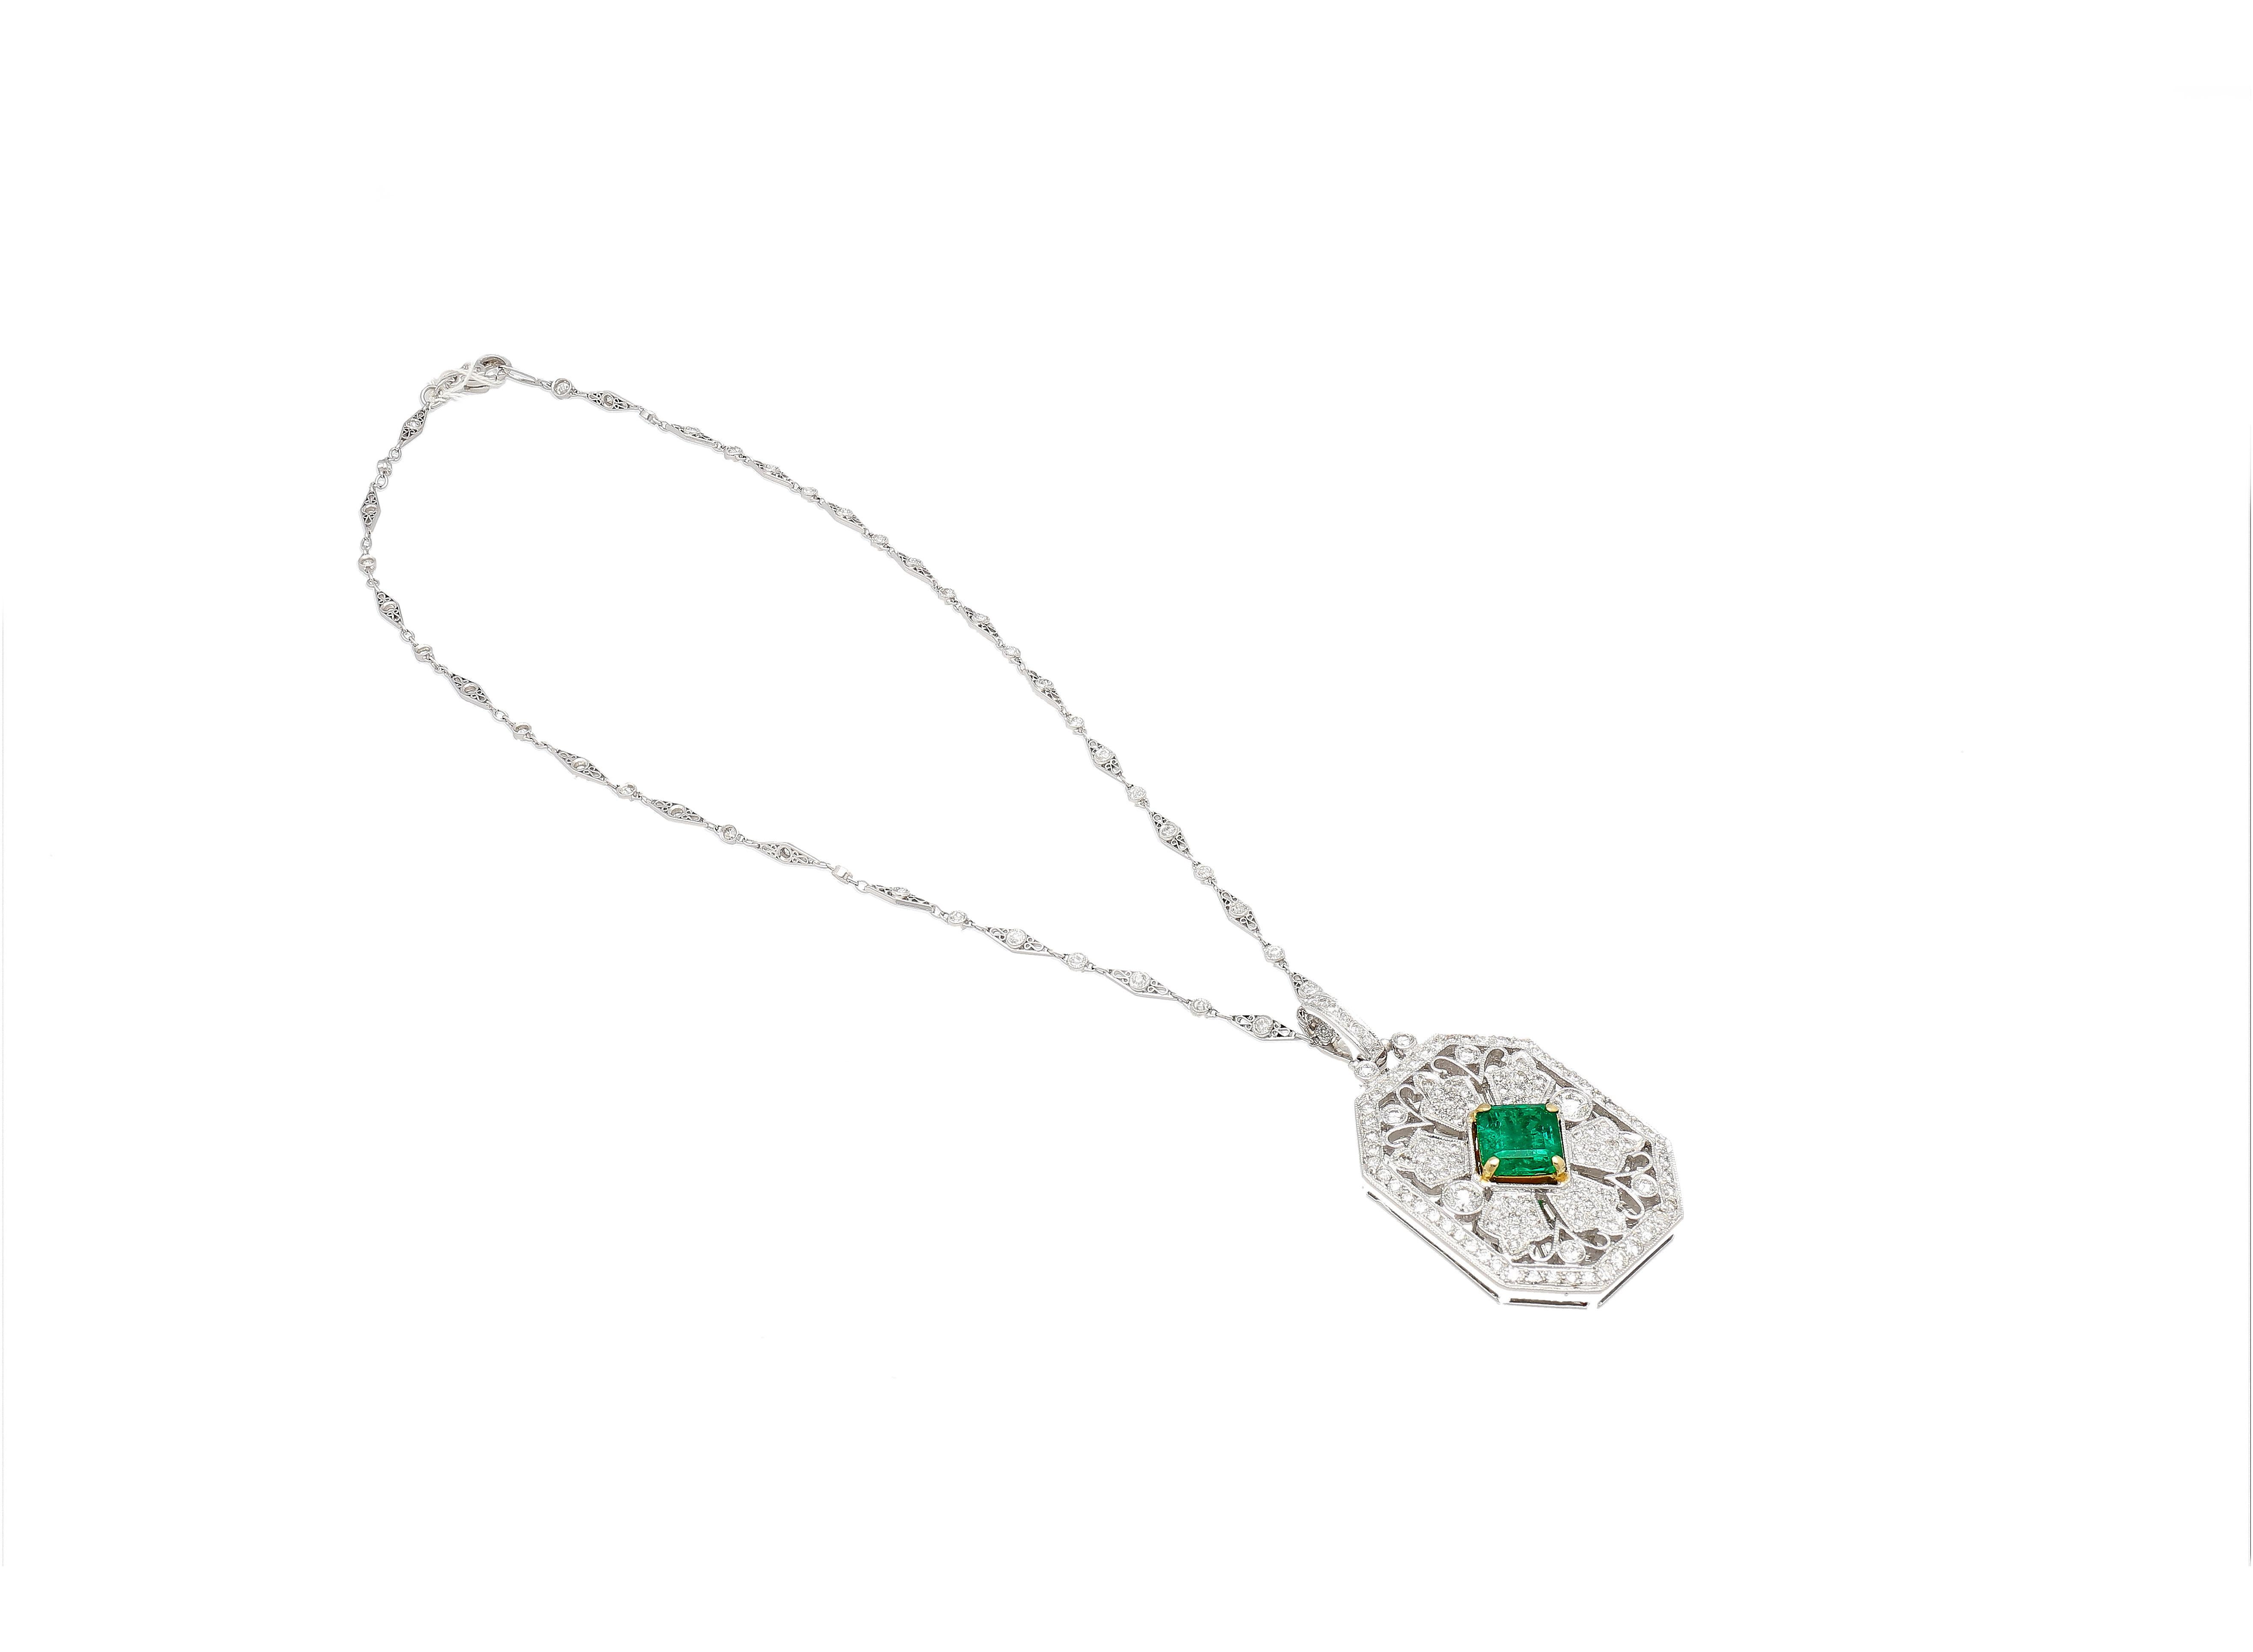 Emerald Cut Vintage Platinum Necklace With 3.16 Carat Minor Oil Emerald & Diamonds For Sale